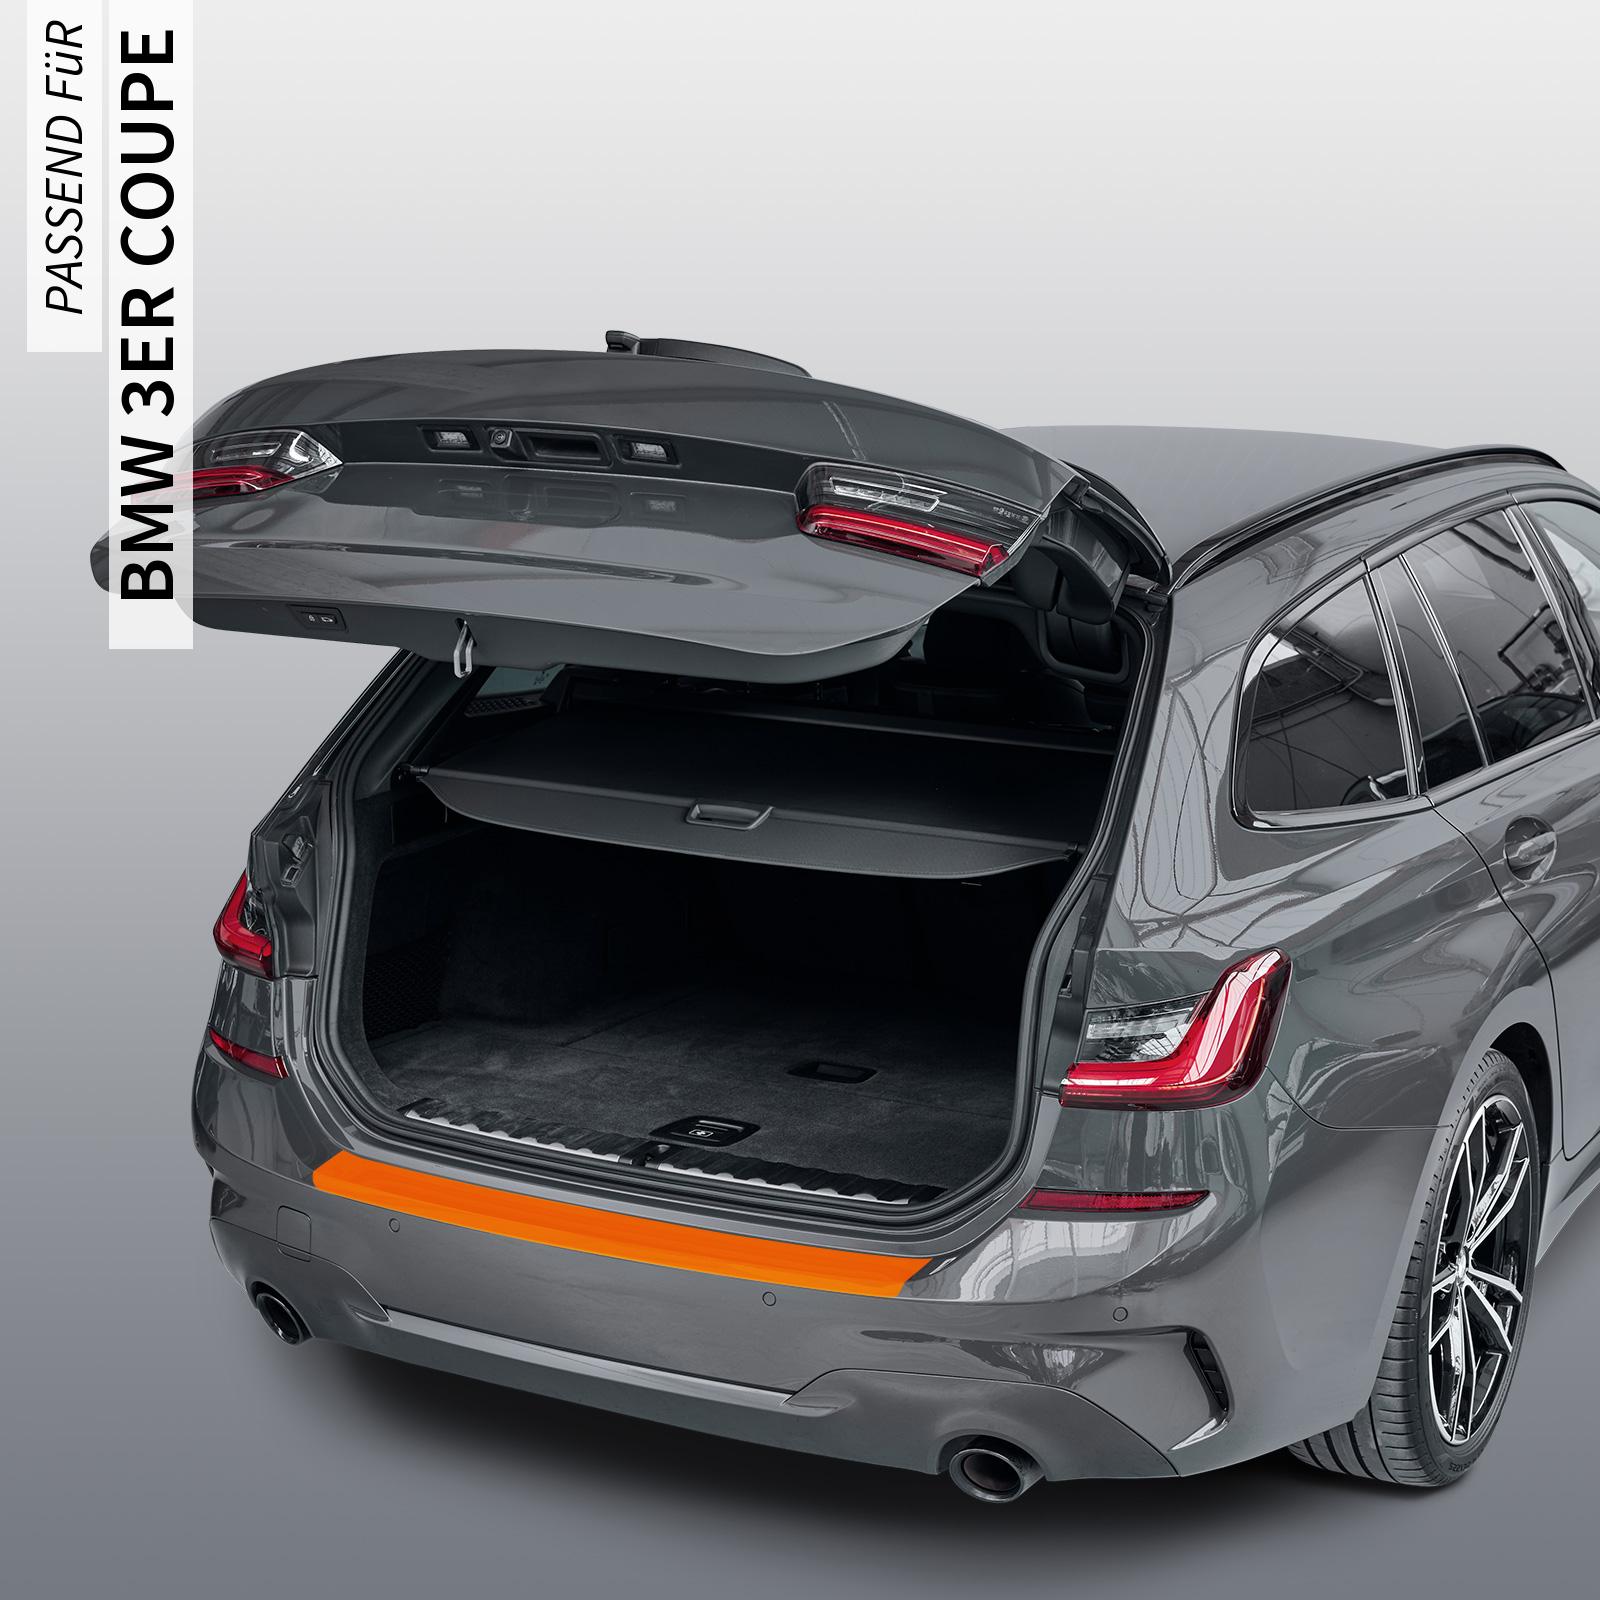 Ladekantenschutzfolie - Transparent Glatt MATT 110 µm stark  für BMW 3er Coupe Typ E92, BJ 2007-07/2013